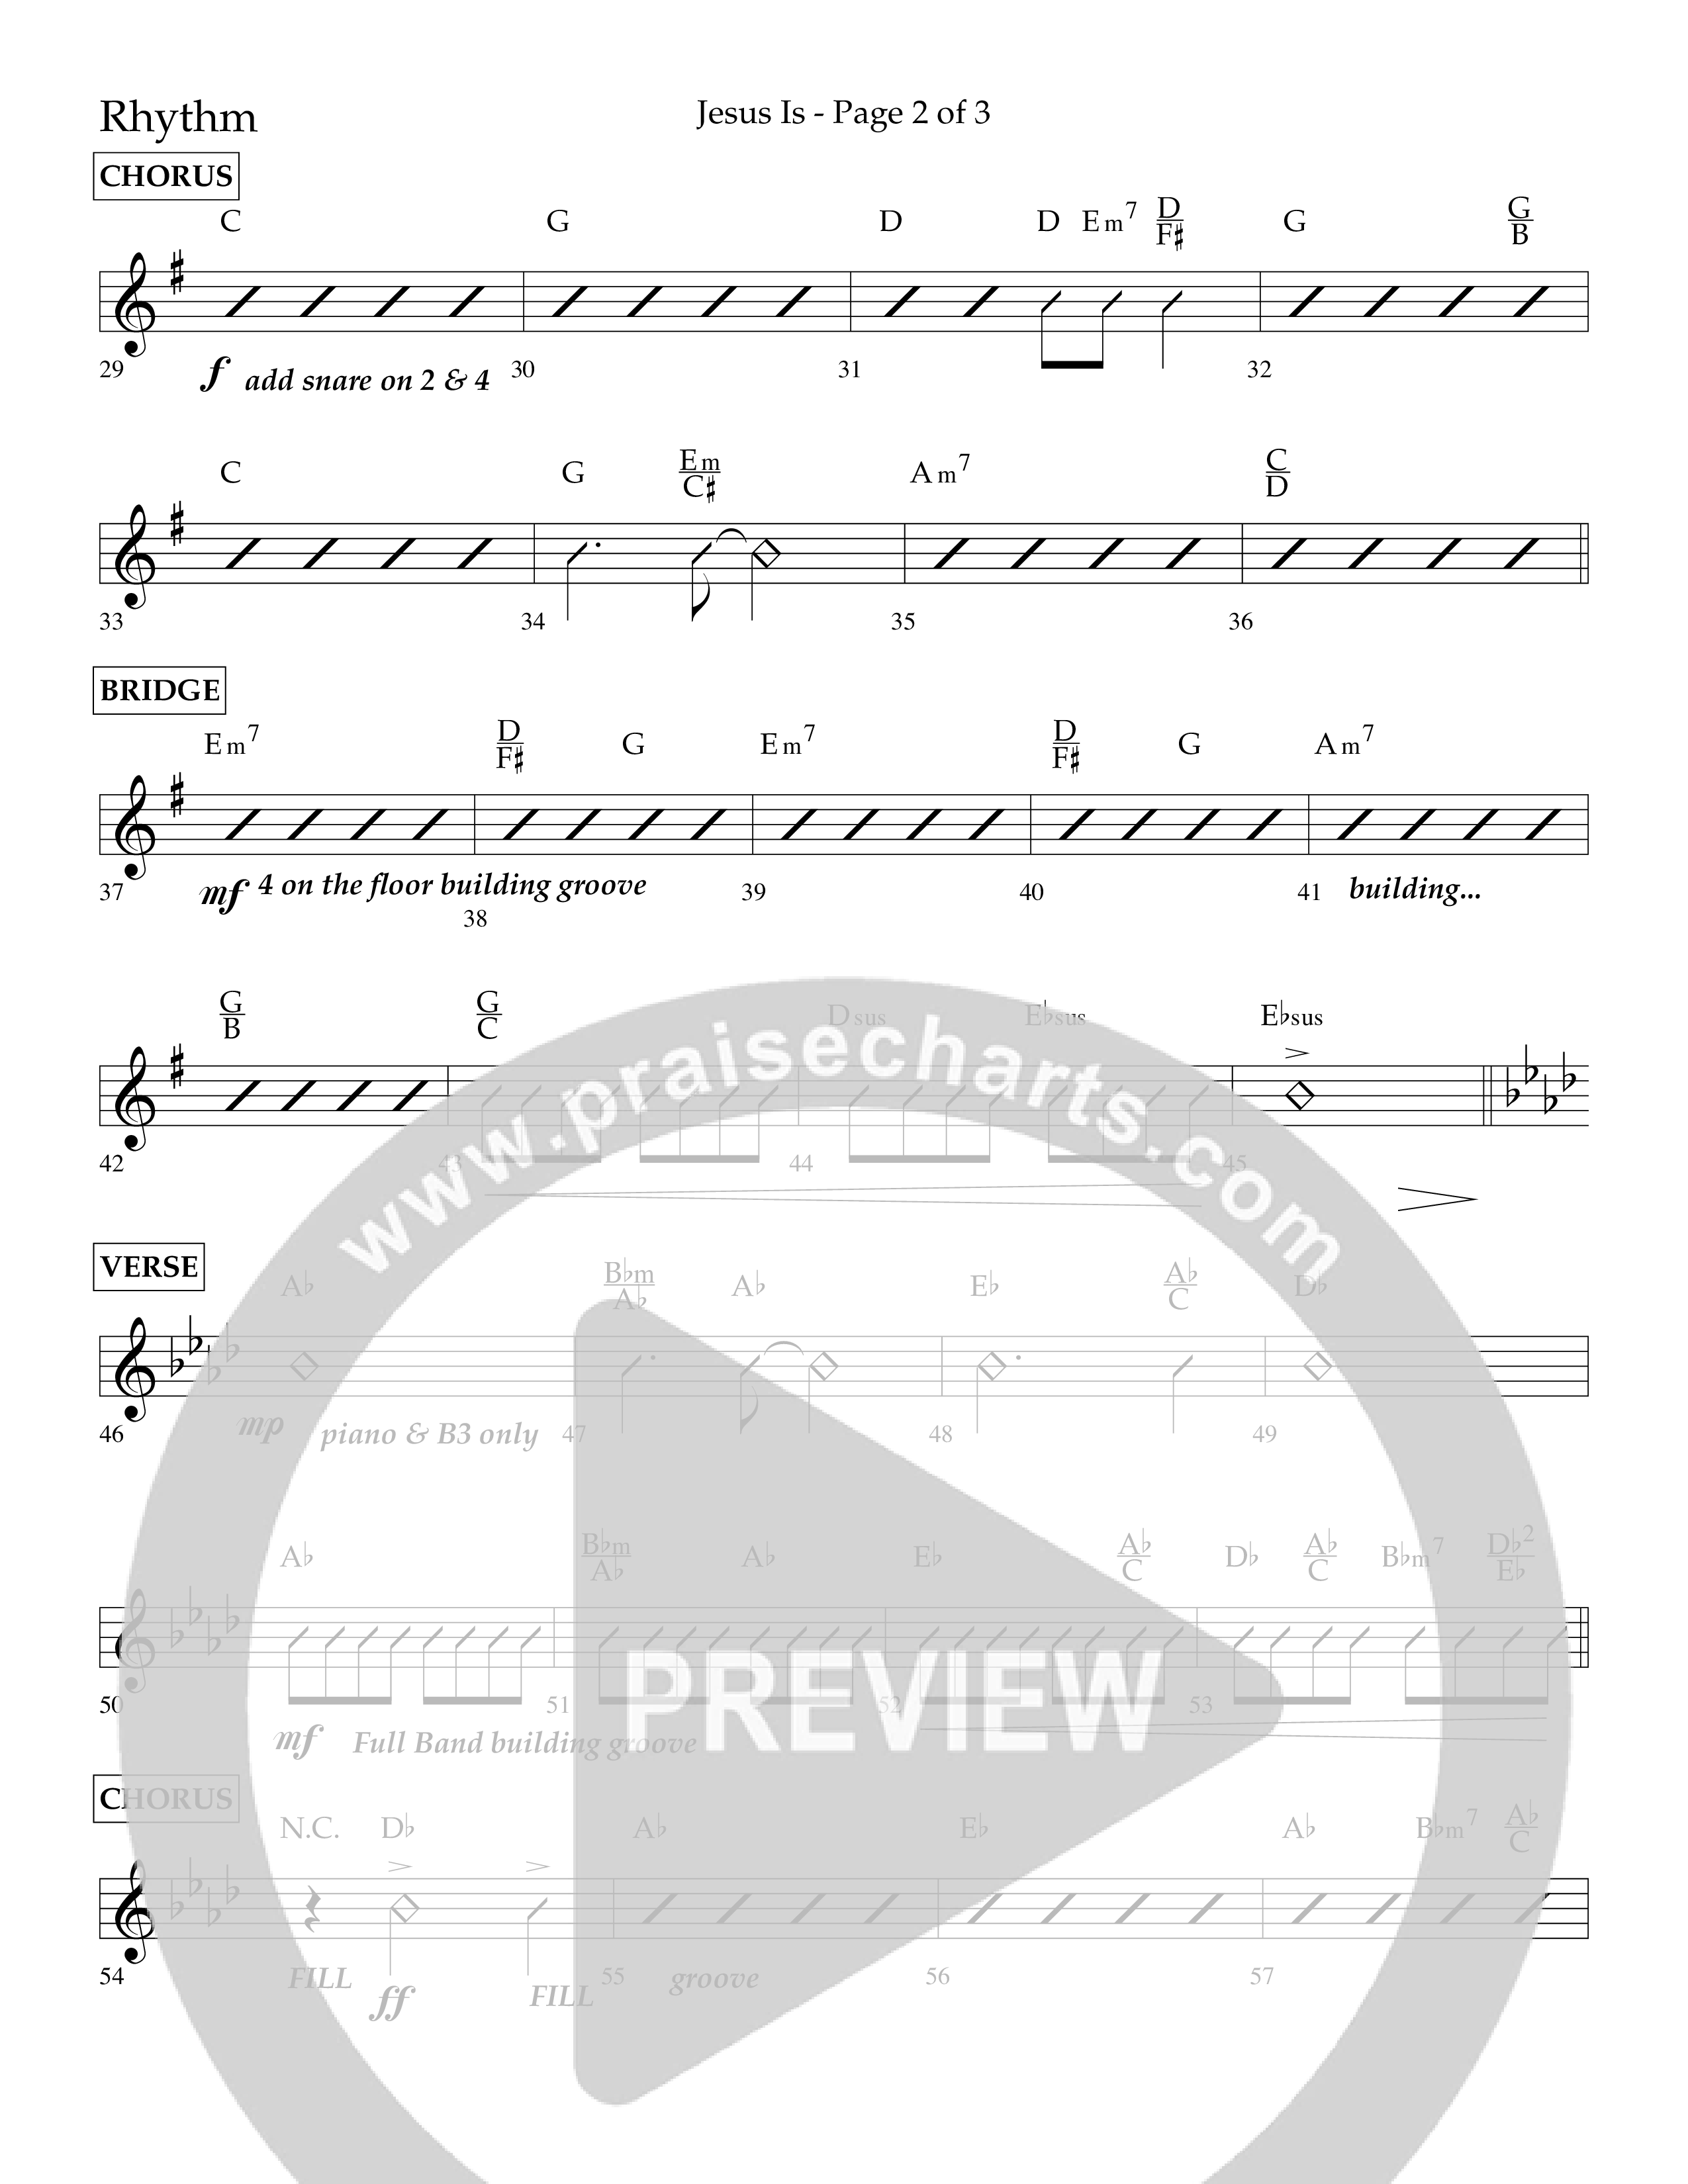 Jesus Is (Choral Anthem SATB) Lead Melody & Rhythm (Lifeway Choral / Arr. John Bolin / Arr. Don Koch / Orch. Cliff Duren)